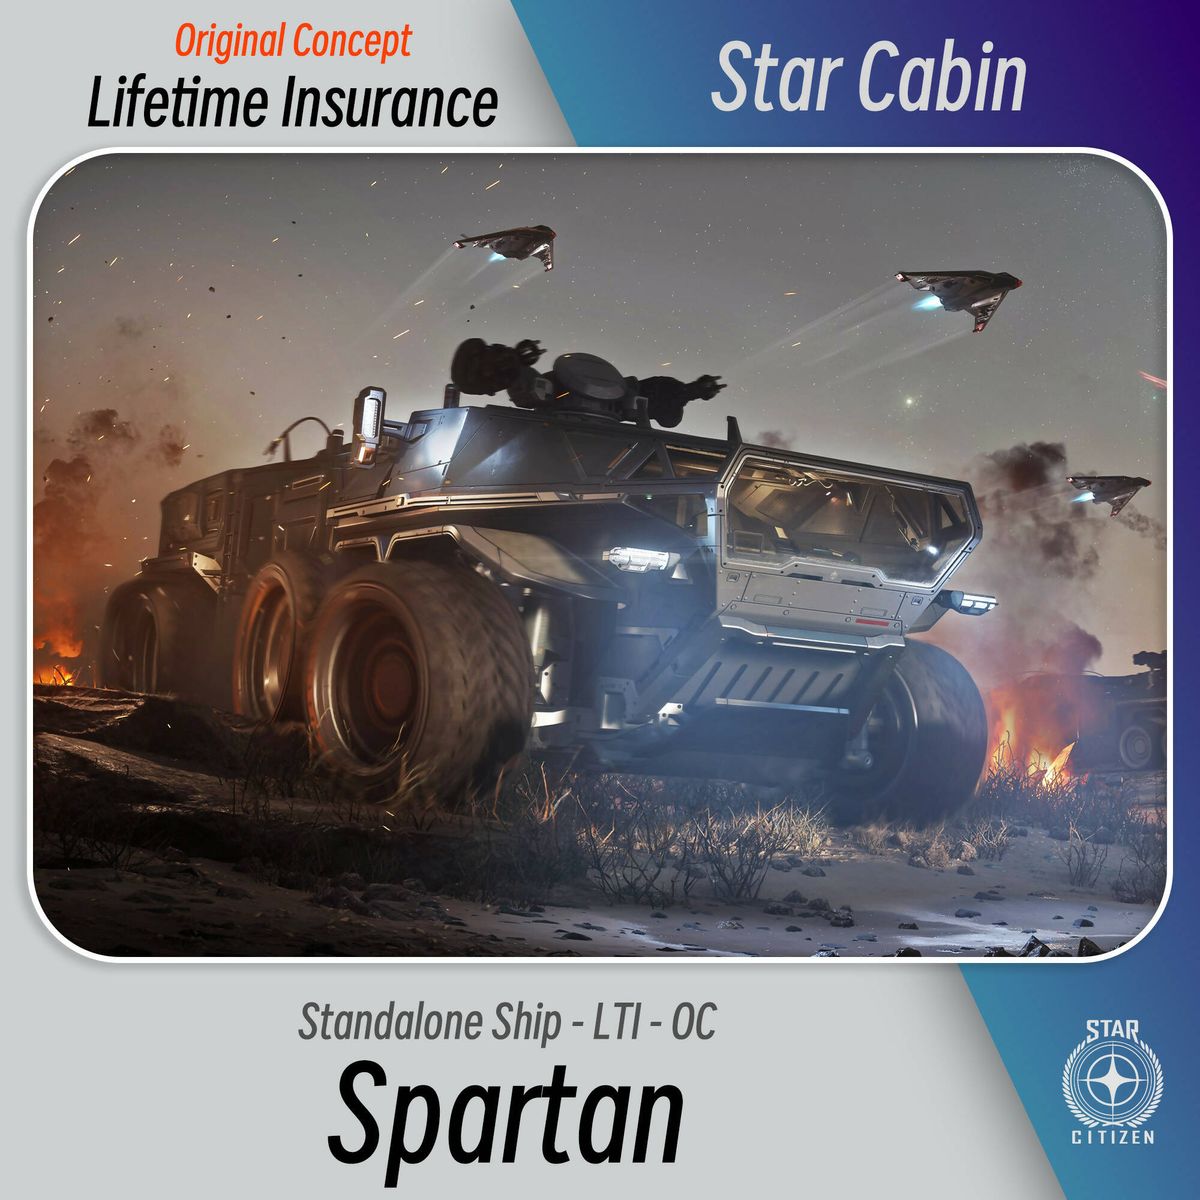 Spartan - LTI - OC